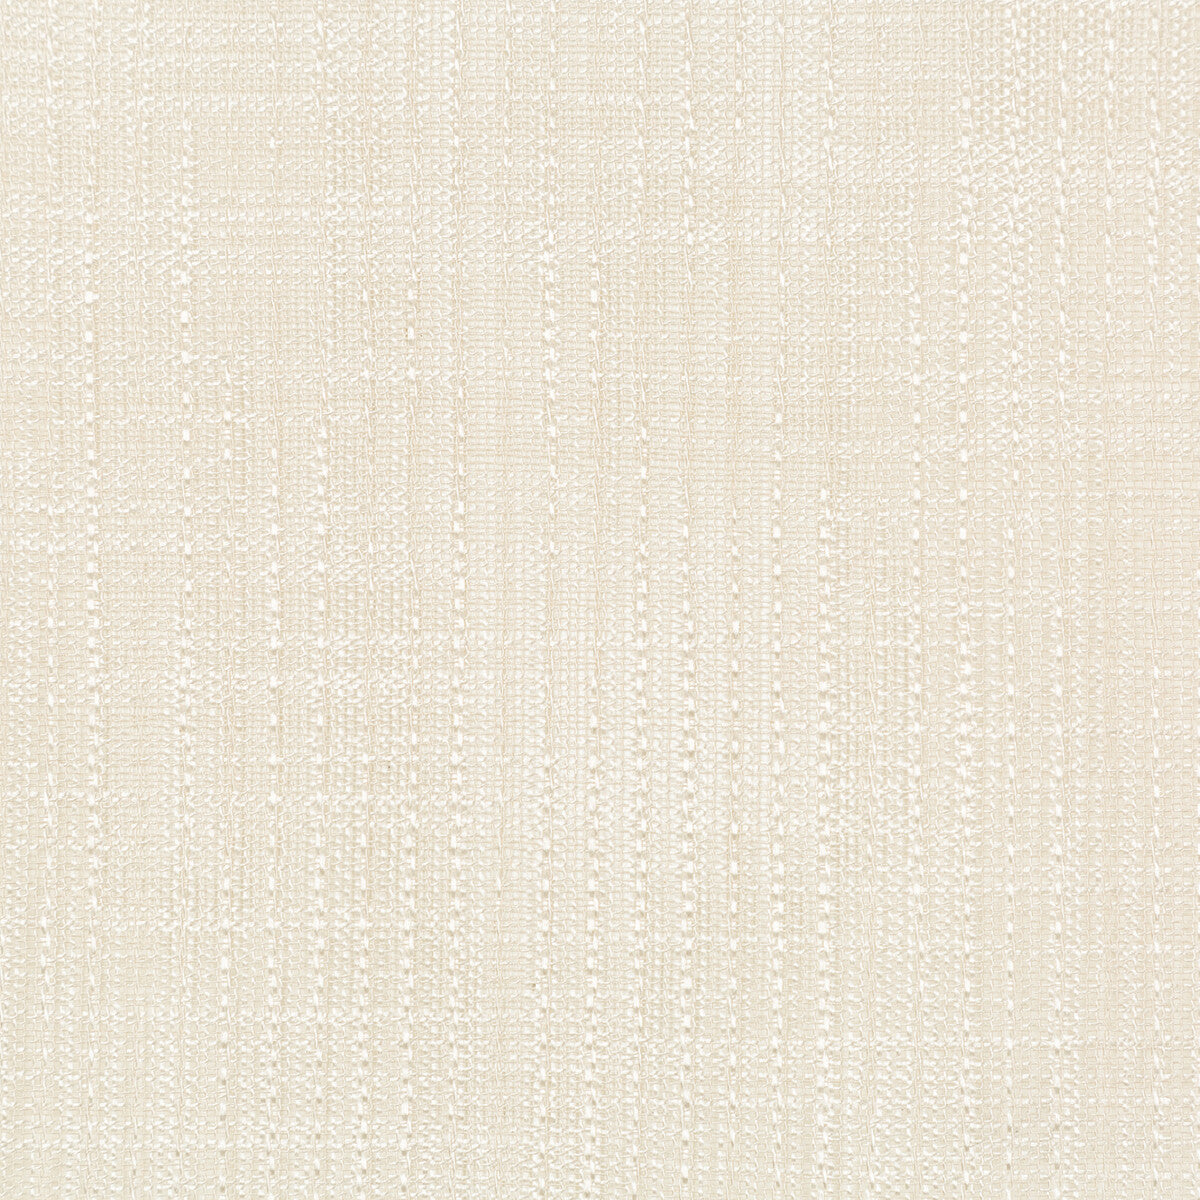 Kravet Basics fabric in 4760-116 color - pattern 4760.116.0 - by Kravet Basics